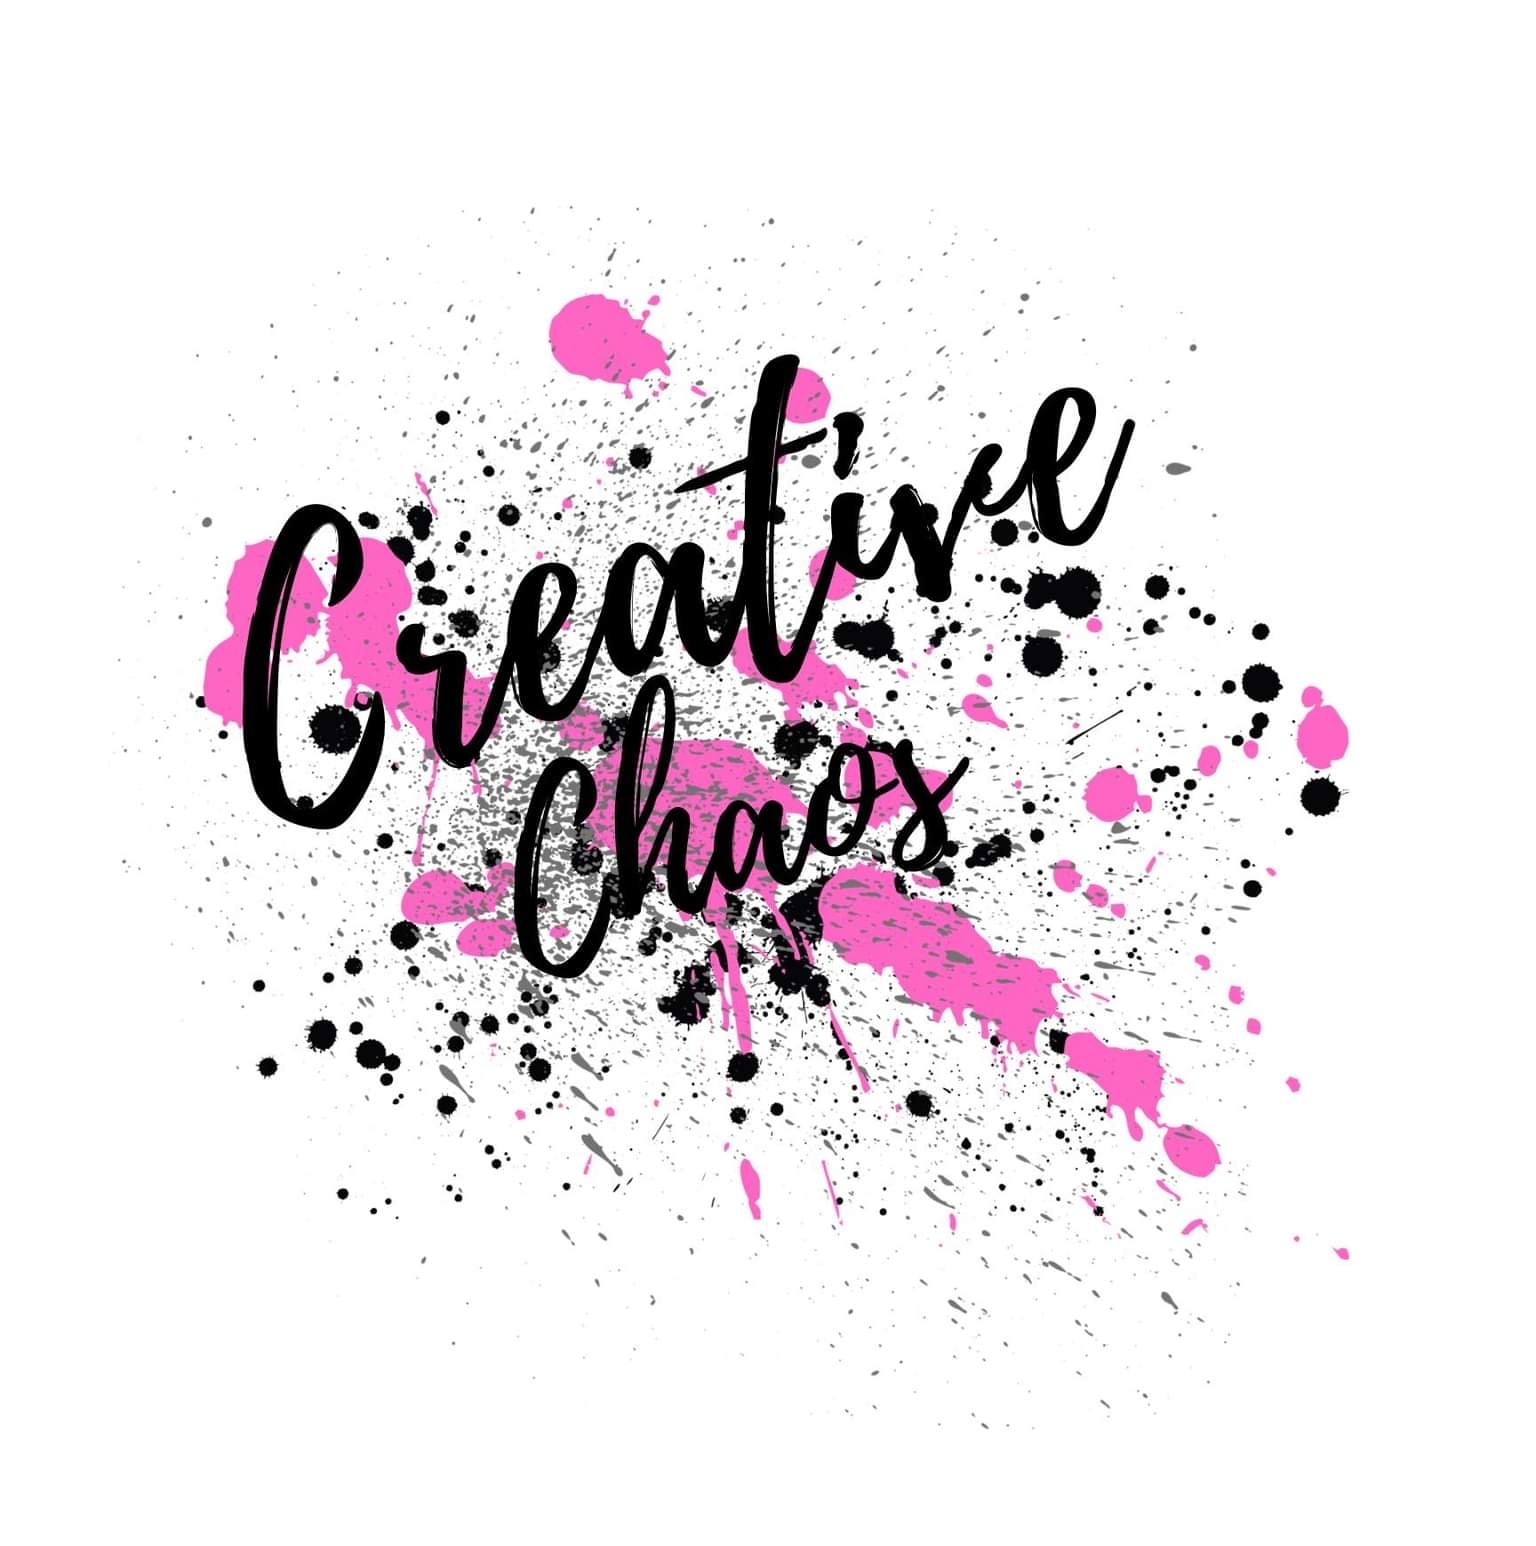 Creative Chaos Salon - Colo Sp Logo